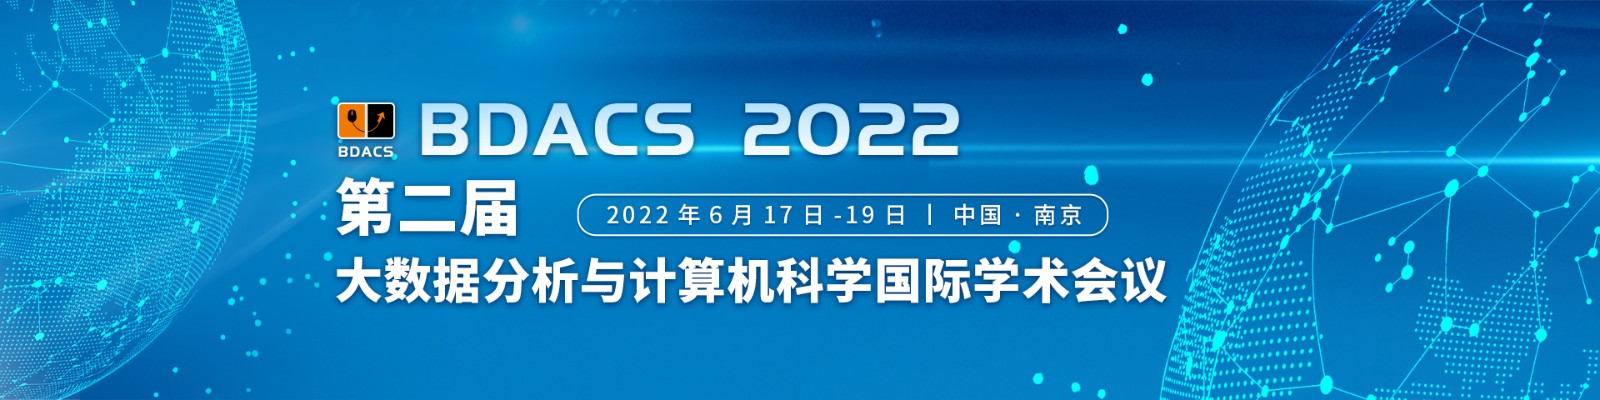 6月南京BDACS2021-会议官网中文banner-林倩瑜-20210927.jpg